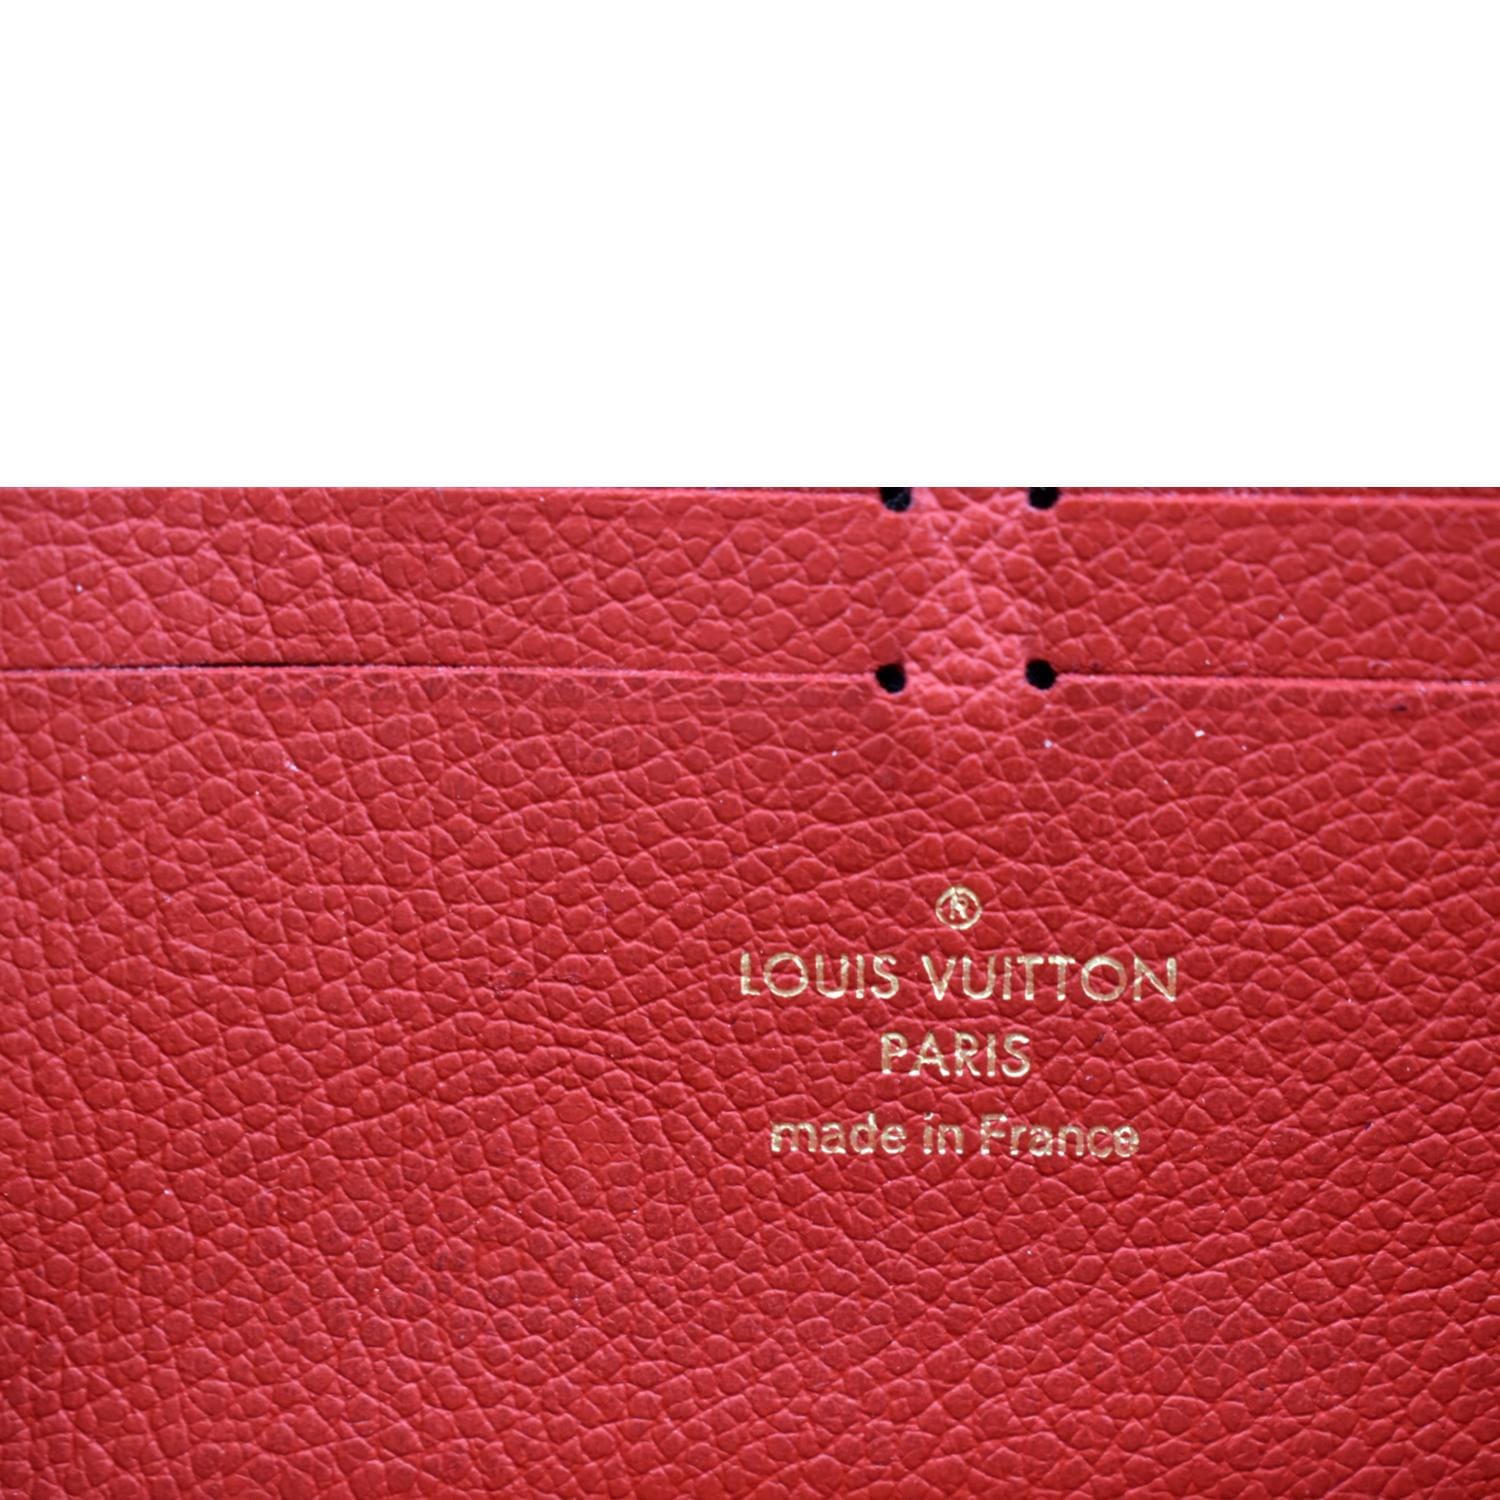 Louis Vuitton Empreinte Wallet Redeemed